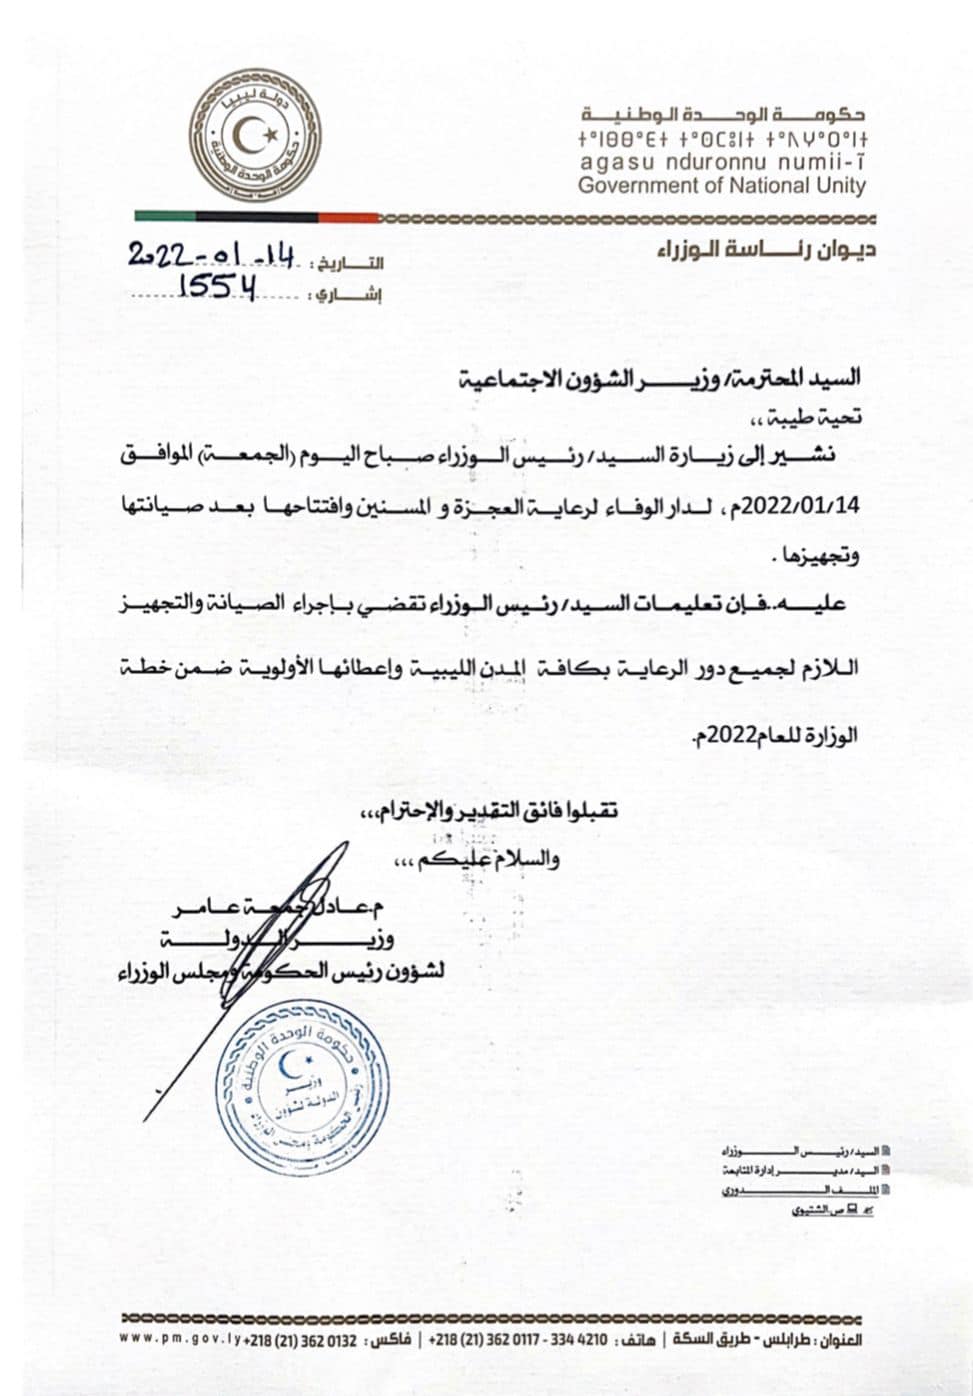 رئيس الحكومة يصدر تعليماته بأجراء الصيانات والتجهيزات اللازمة لجميع دور الرعاية بكافة المدن الليبية.